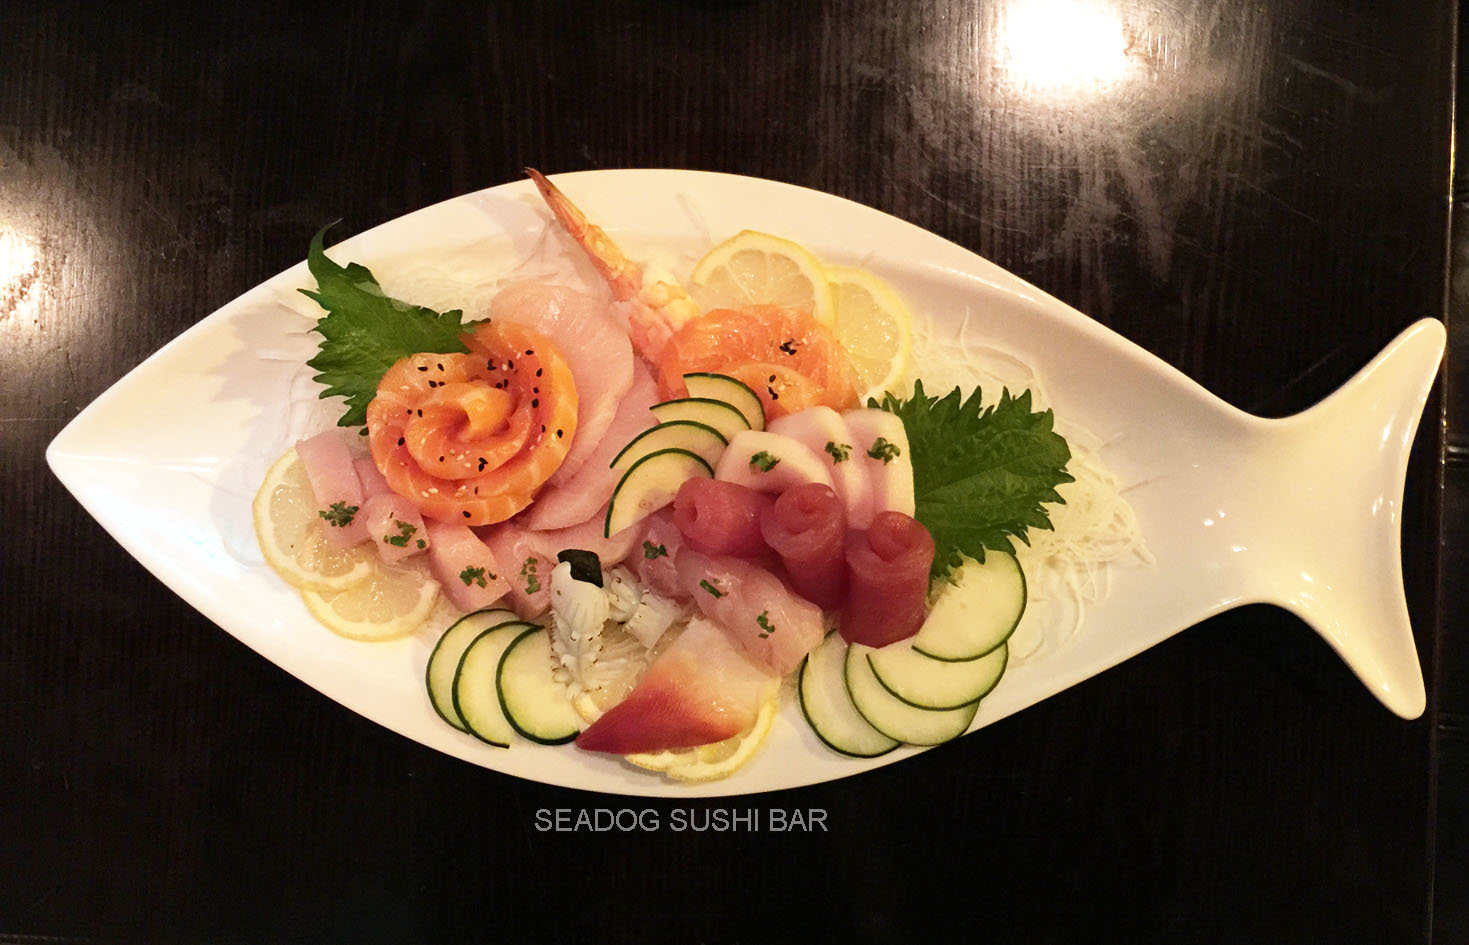 Seadog sushi bar Photo